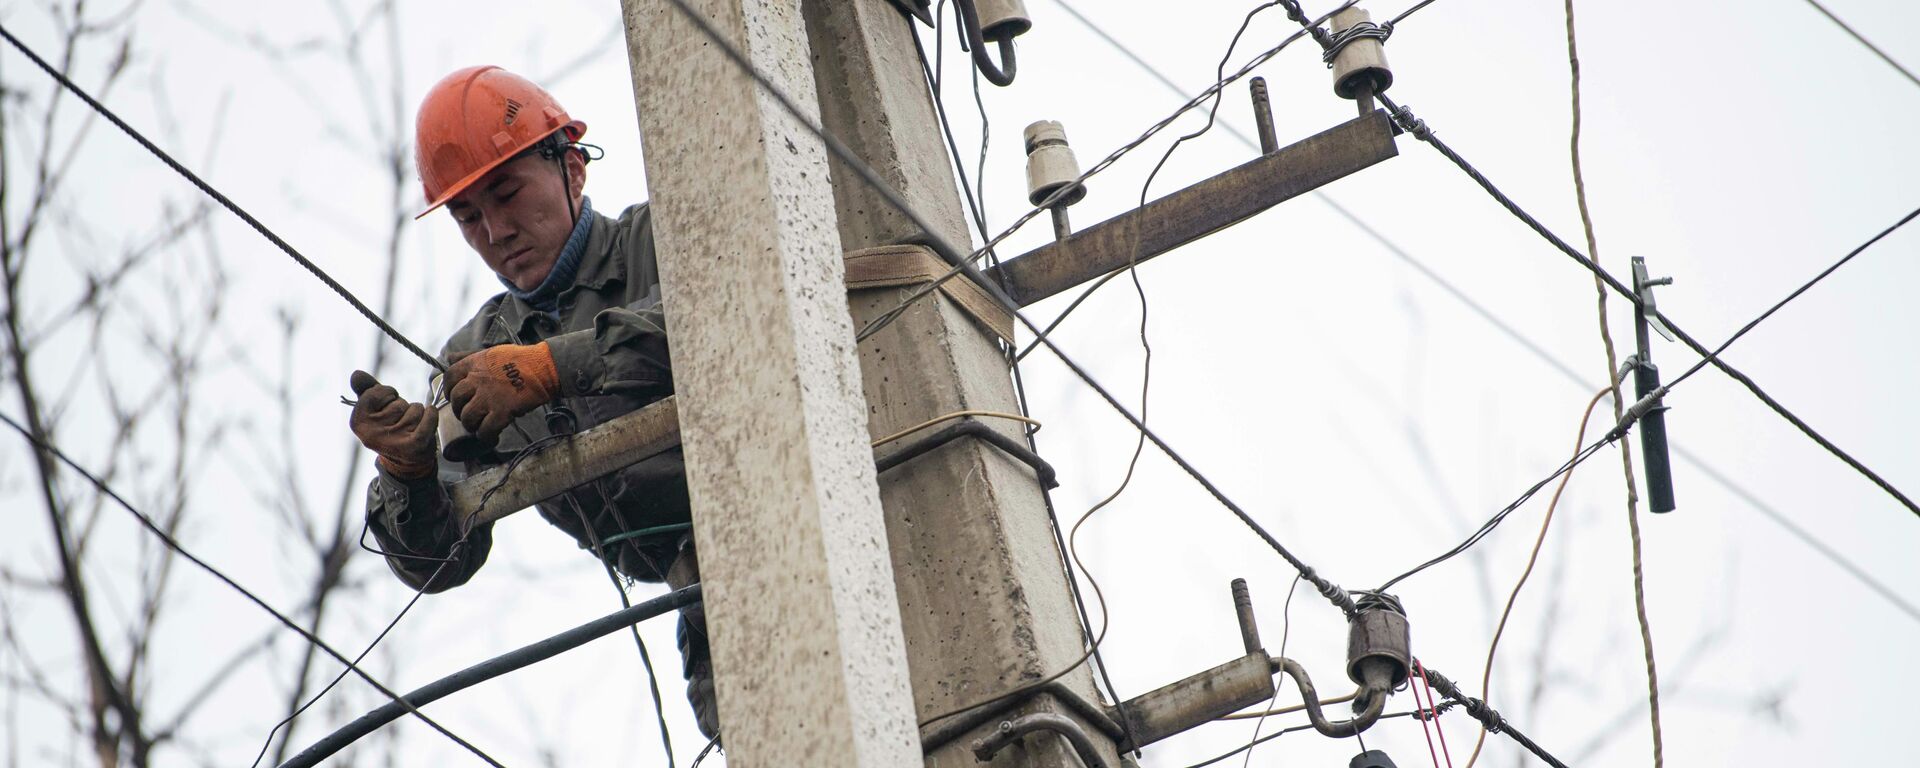 Сотрудник Северэлектро проводит ремонтные работы на линии электропередач. Архивное фото - Sputnik Кыргызстан, 1920, 30.11.2021